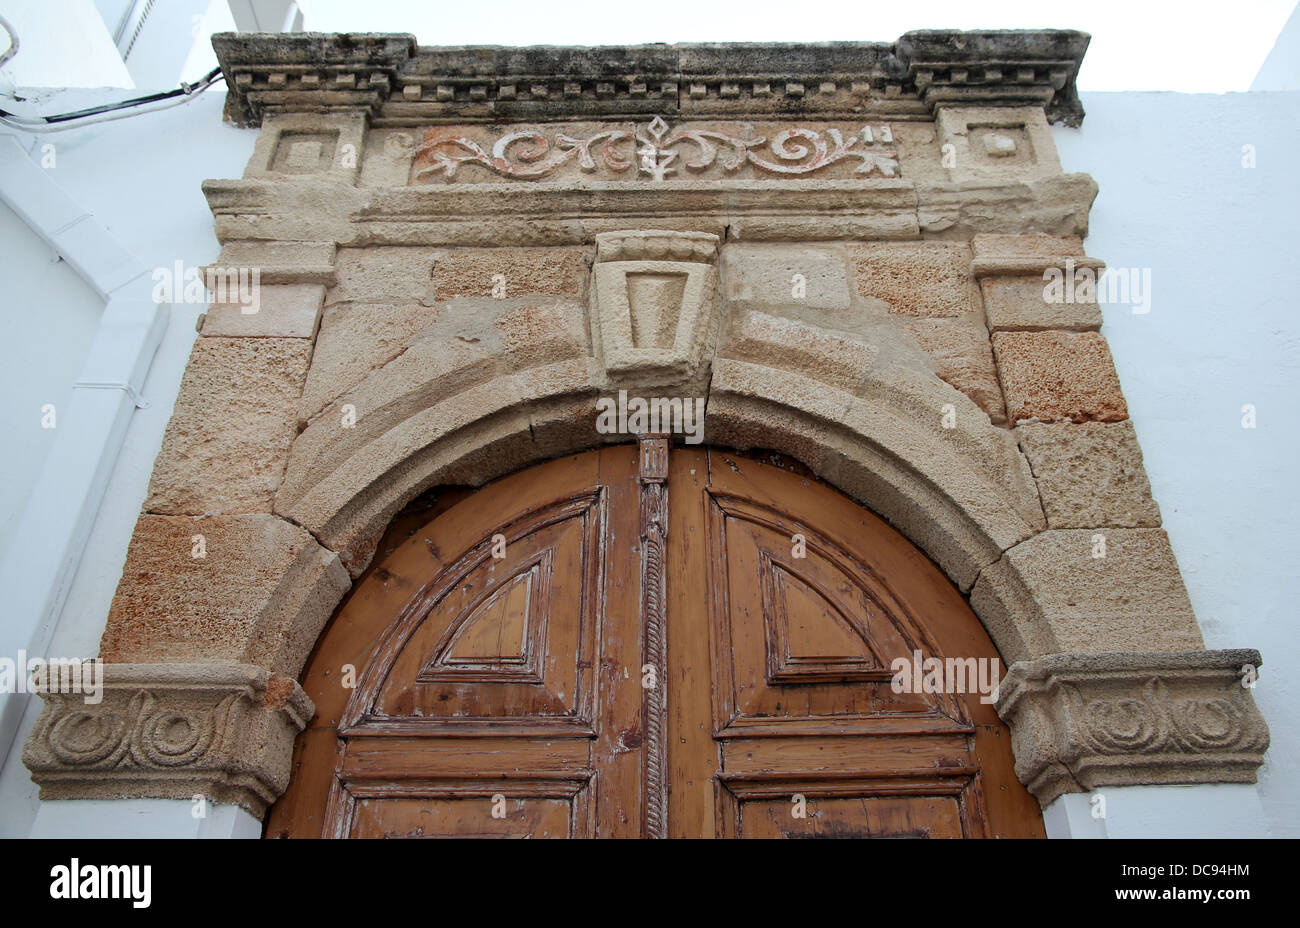 Porte de pierre sculptés à Lindos, Rhodes, Grèce Banque D'Images